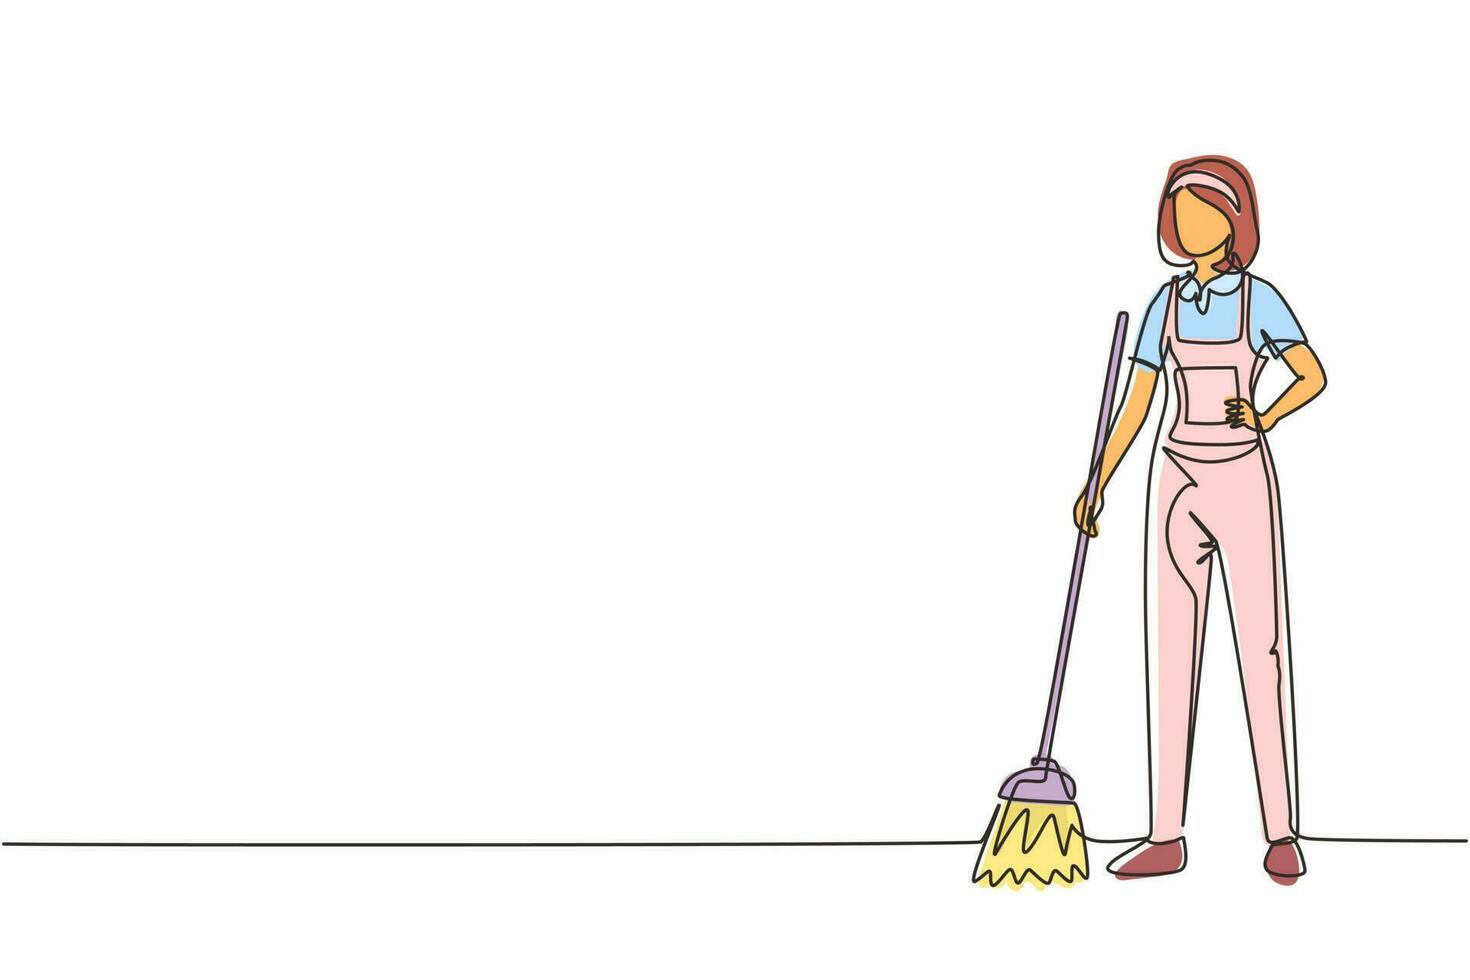 singola linea continua disegno sorridente giovane donna bidello in piedi in uniforme, spazzando il pavimento con scopa, pulizia professionale, servizio di casa e ufficio. illustrazione vettoriale di un disegno di linea